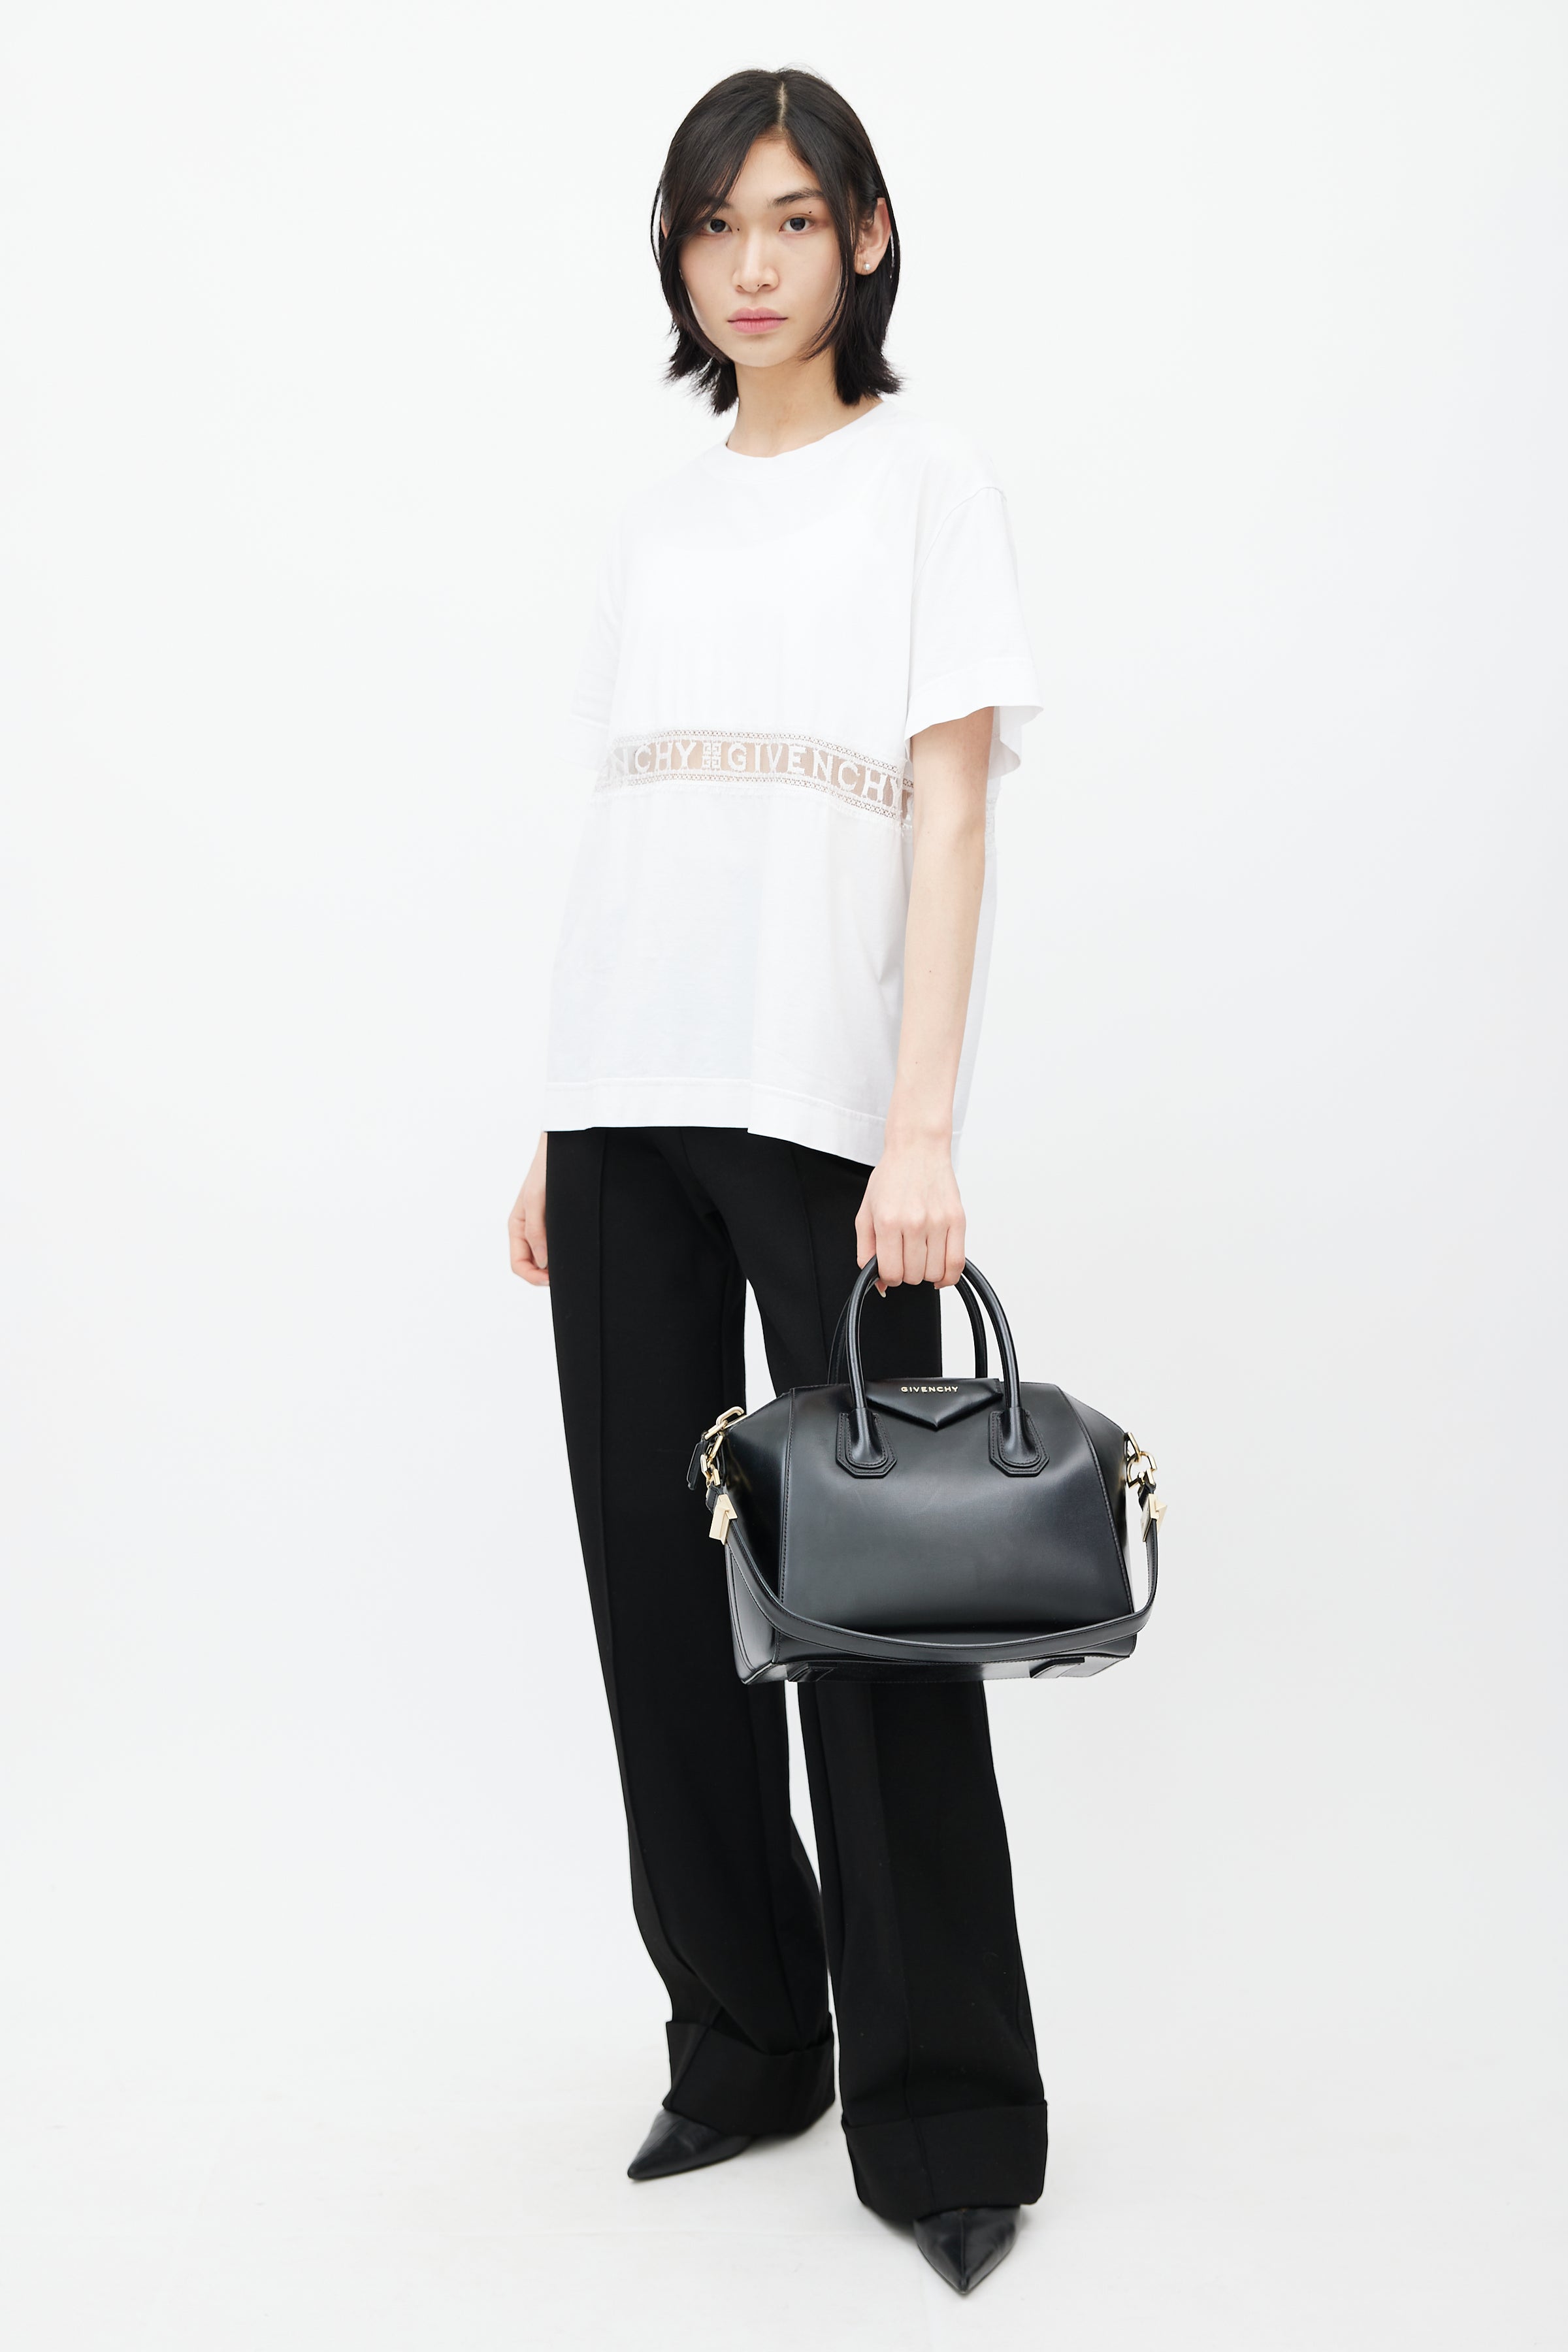 Black Givenchy Antigona Python & Leather Handbag – Designer Revival